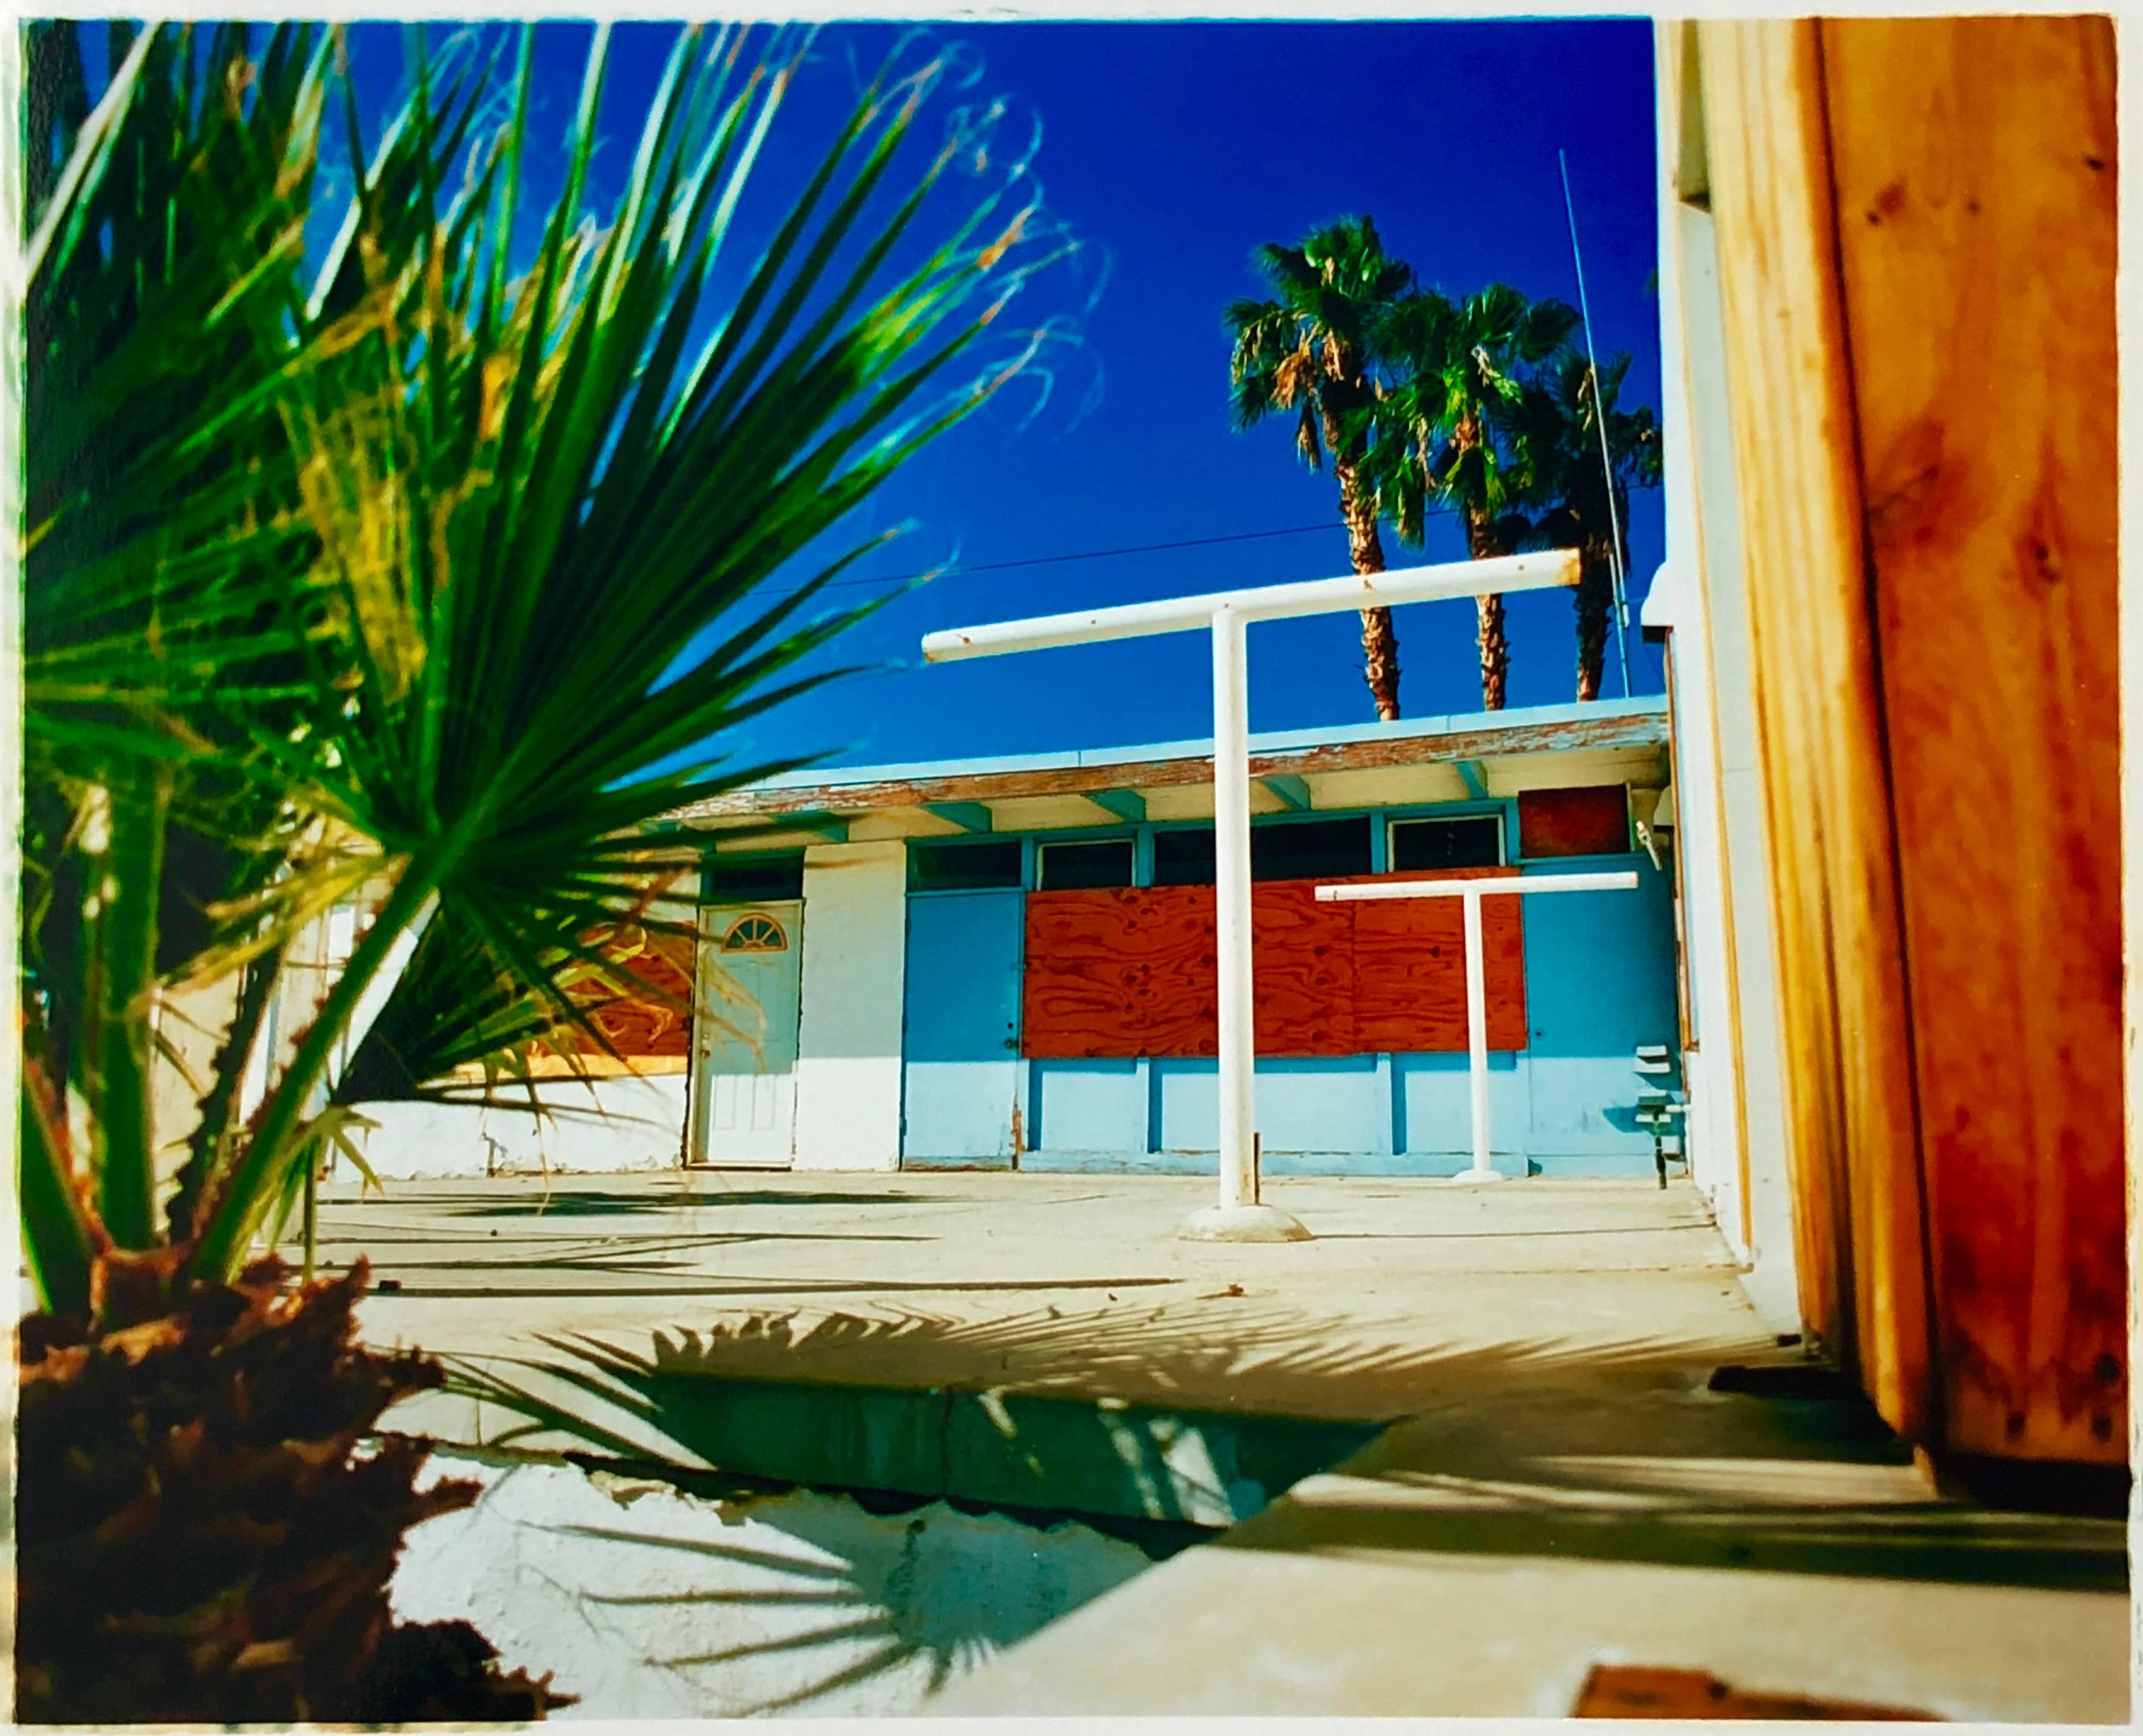 Richard Heeps Print - Motel Desert Shores, Salton Sea, California - American Color Photography